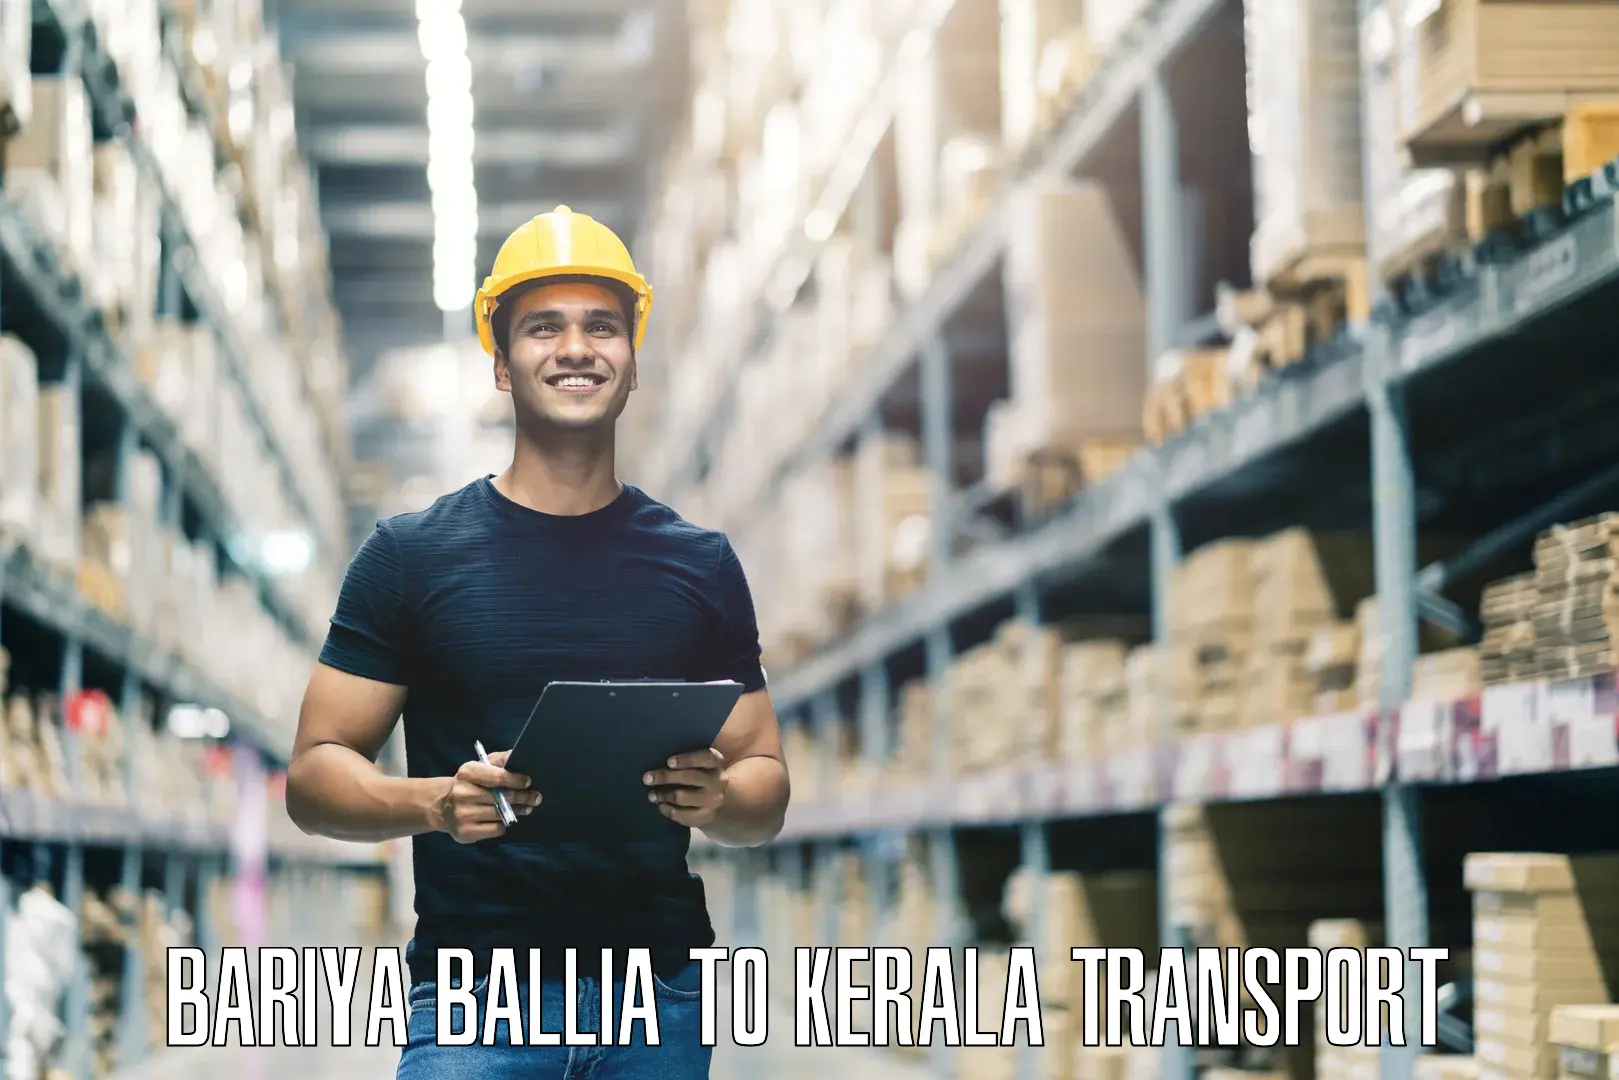 Container transport service Bariya Ballia to Guruvayoor